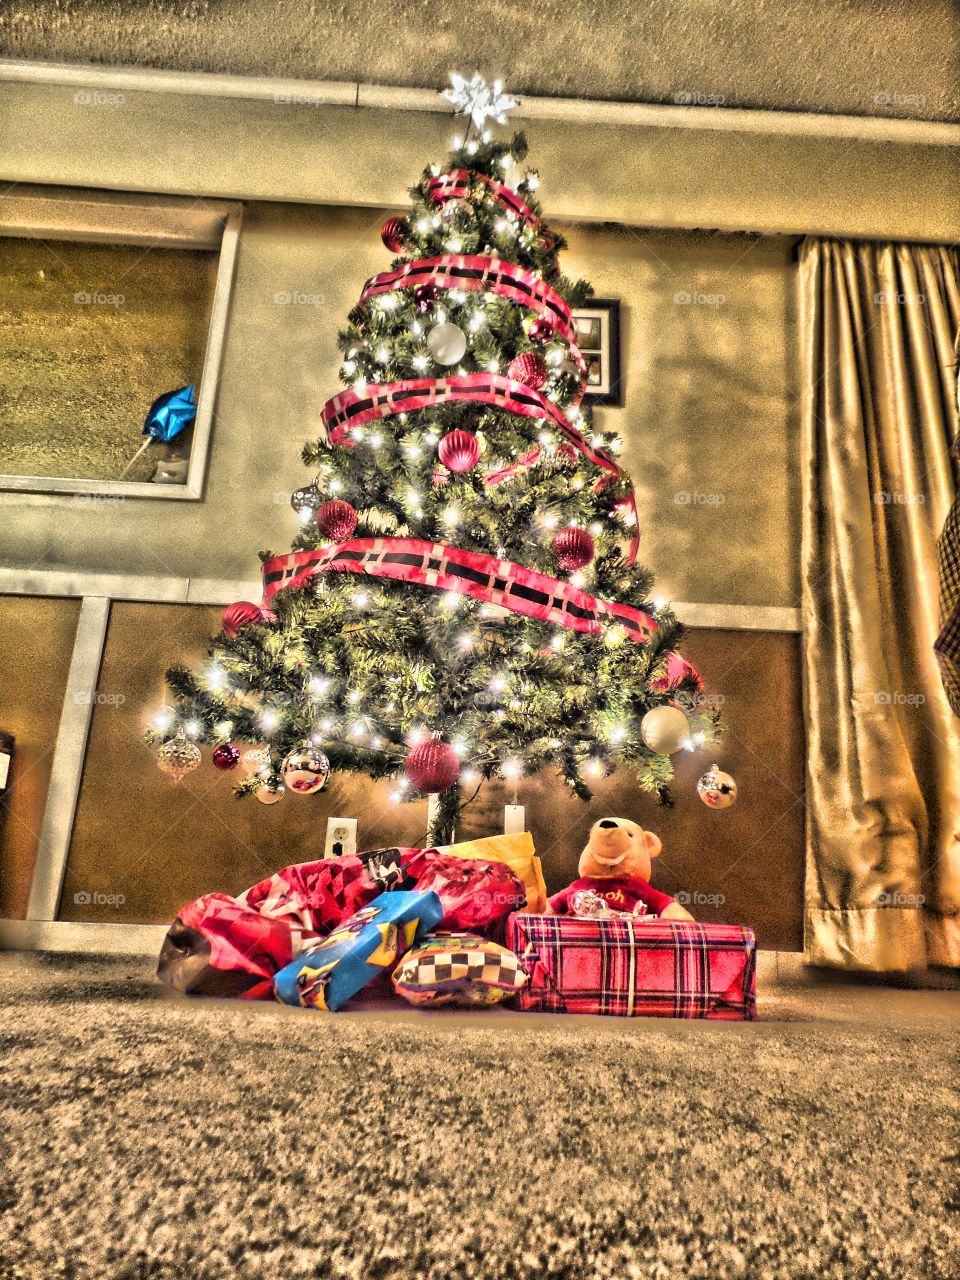 O Christmas tree...